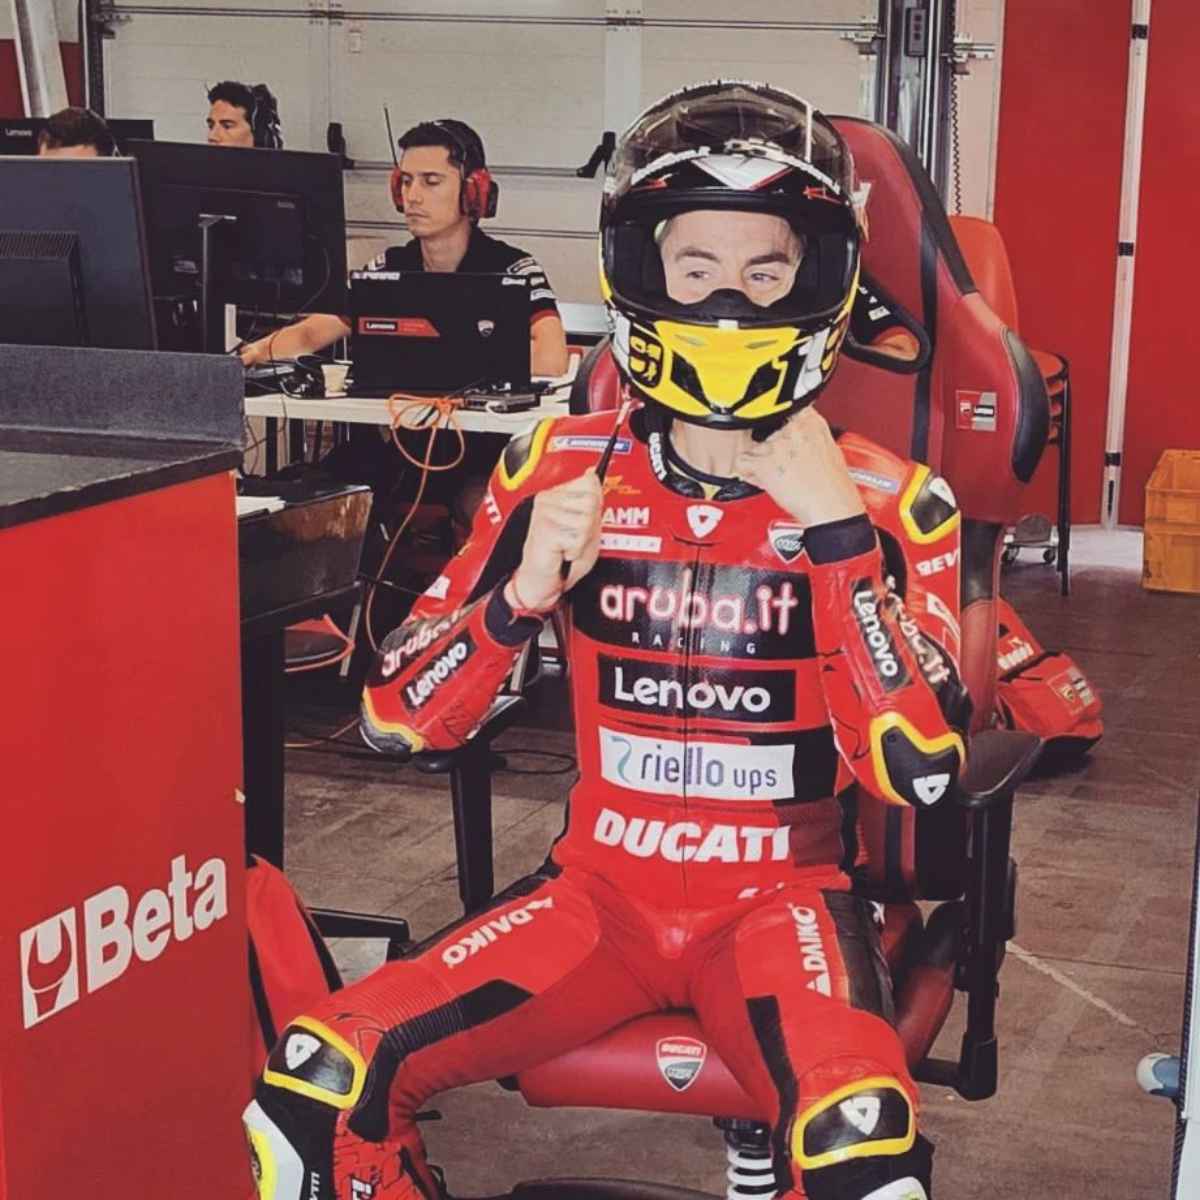 Superbike, Bautista: ein weiterer Test mit der Ducati MotoGP in Misano